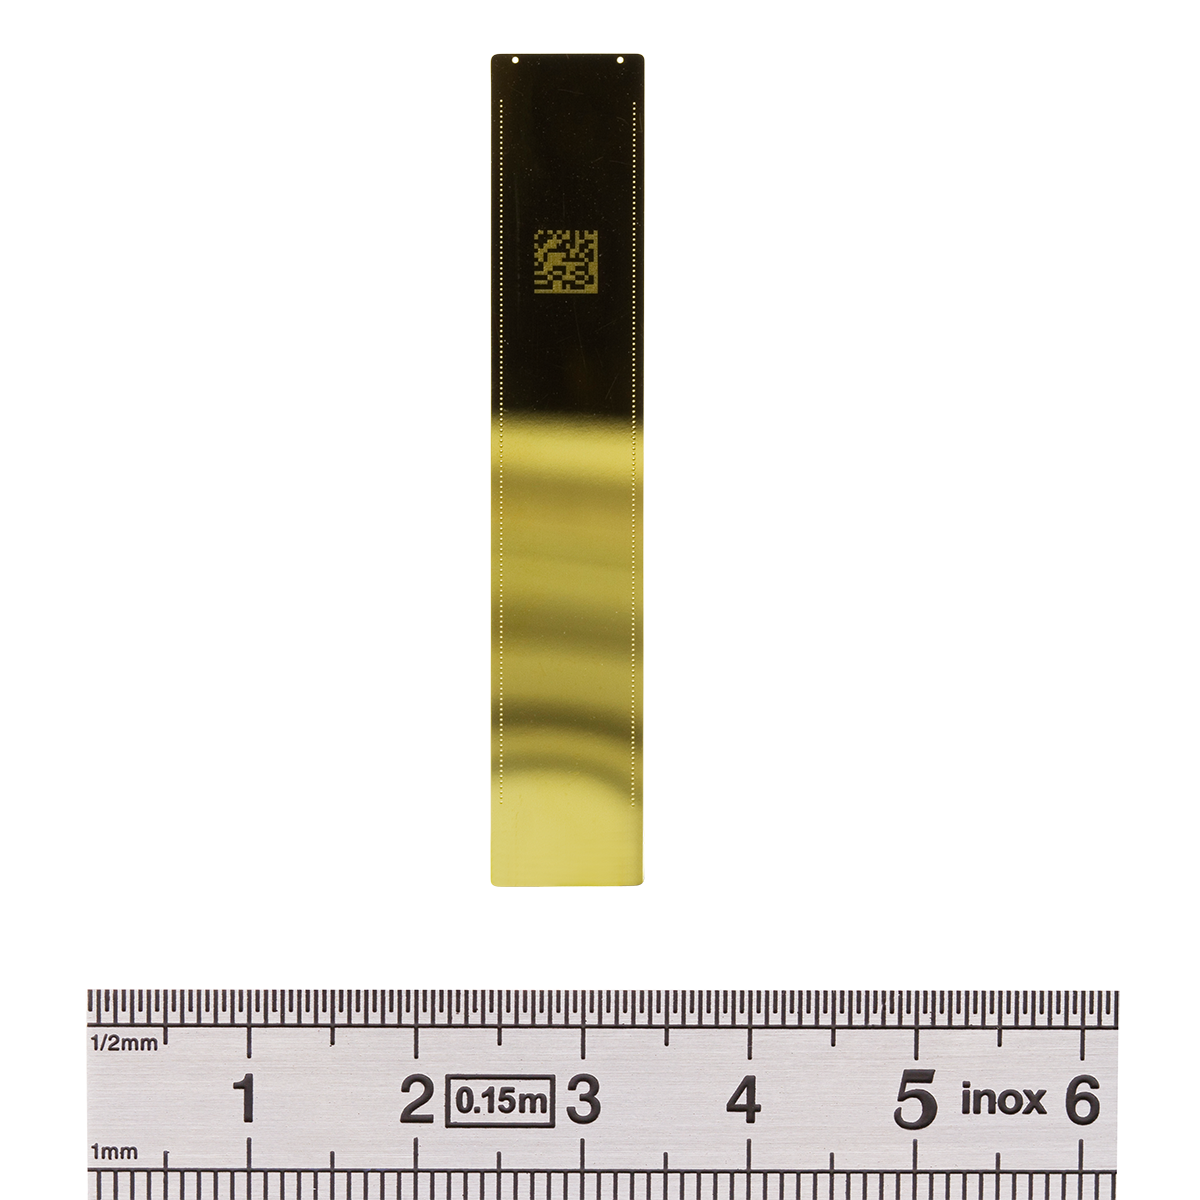 fabrication pièces métalliques - Tolerances micromètre